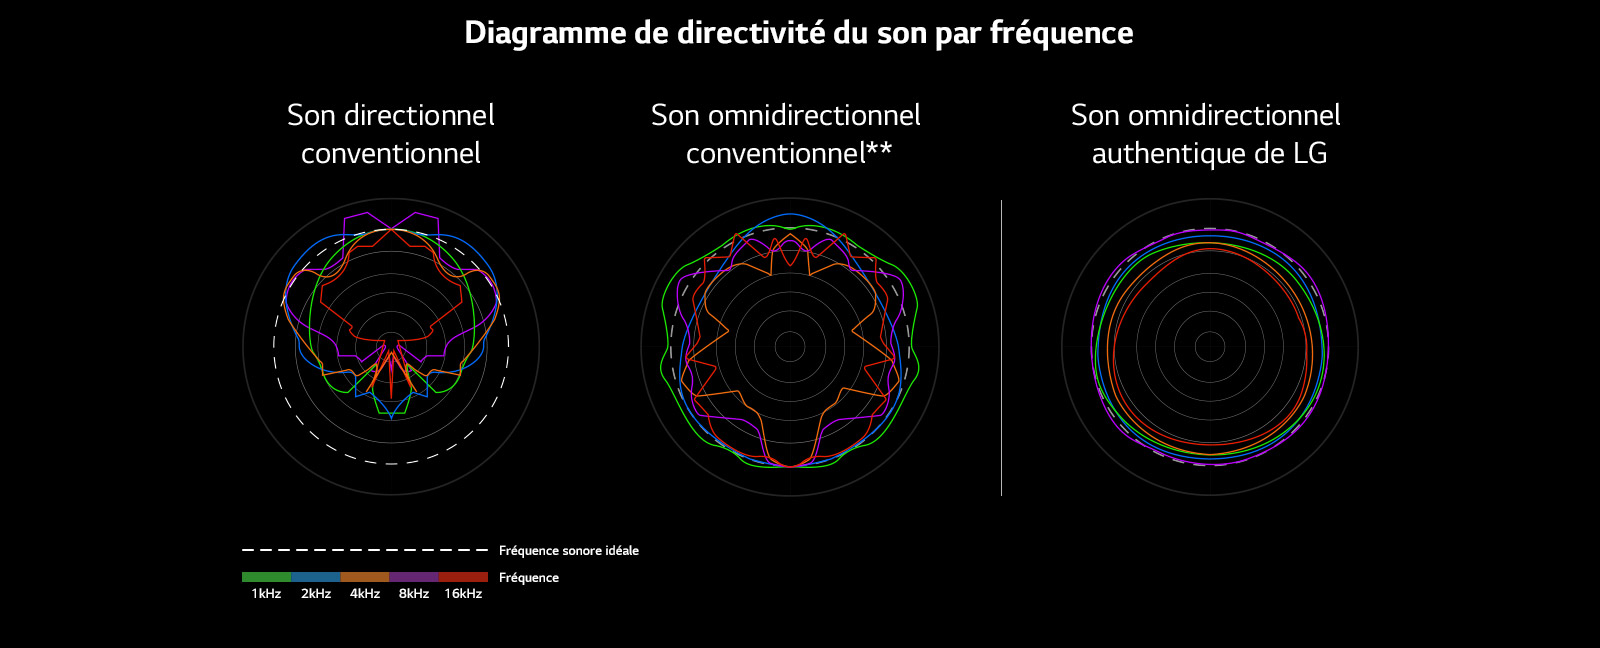 Une image qui compare les longueurs d’ondes sonores du son directionnel conventionnel et du son omnidirectionnel conventionnel avec celles du son omnidirectionnel authentique de LG.